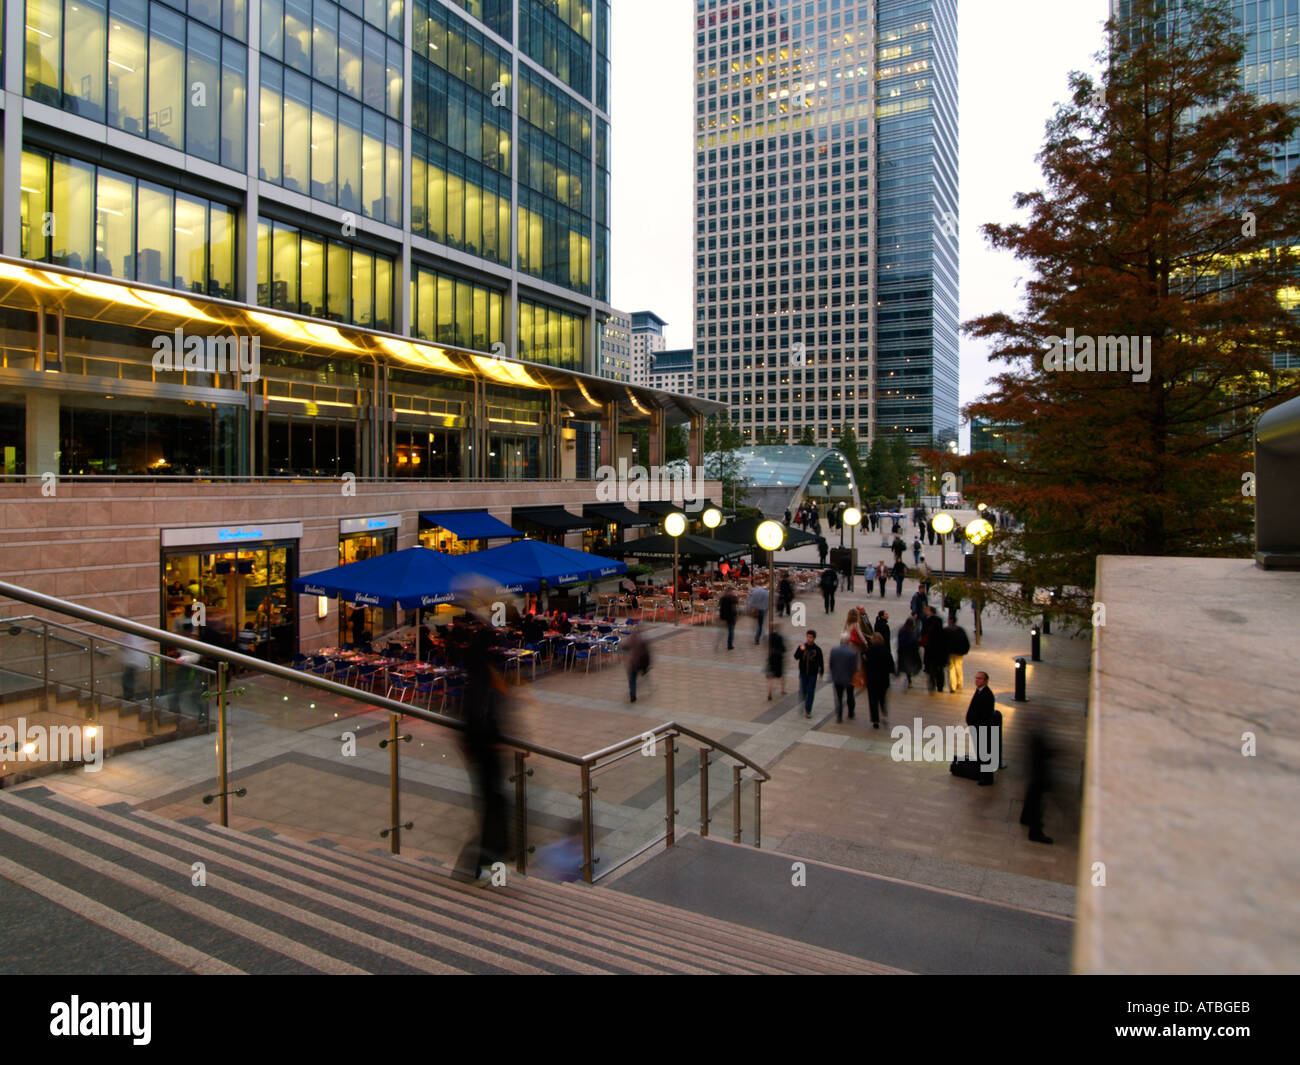 Les immeubles de bureaux les gens et de chaussée cafe à Docklands Canary Wharf London UK Banque D'Images